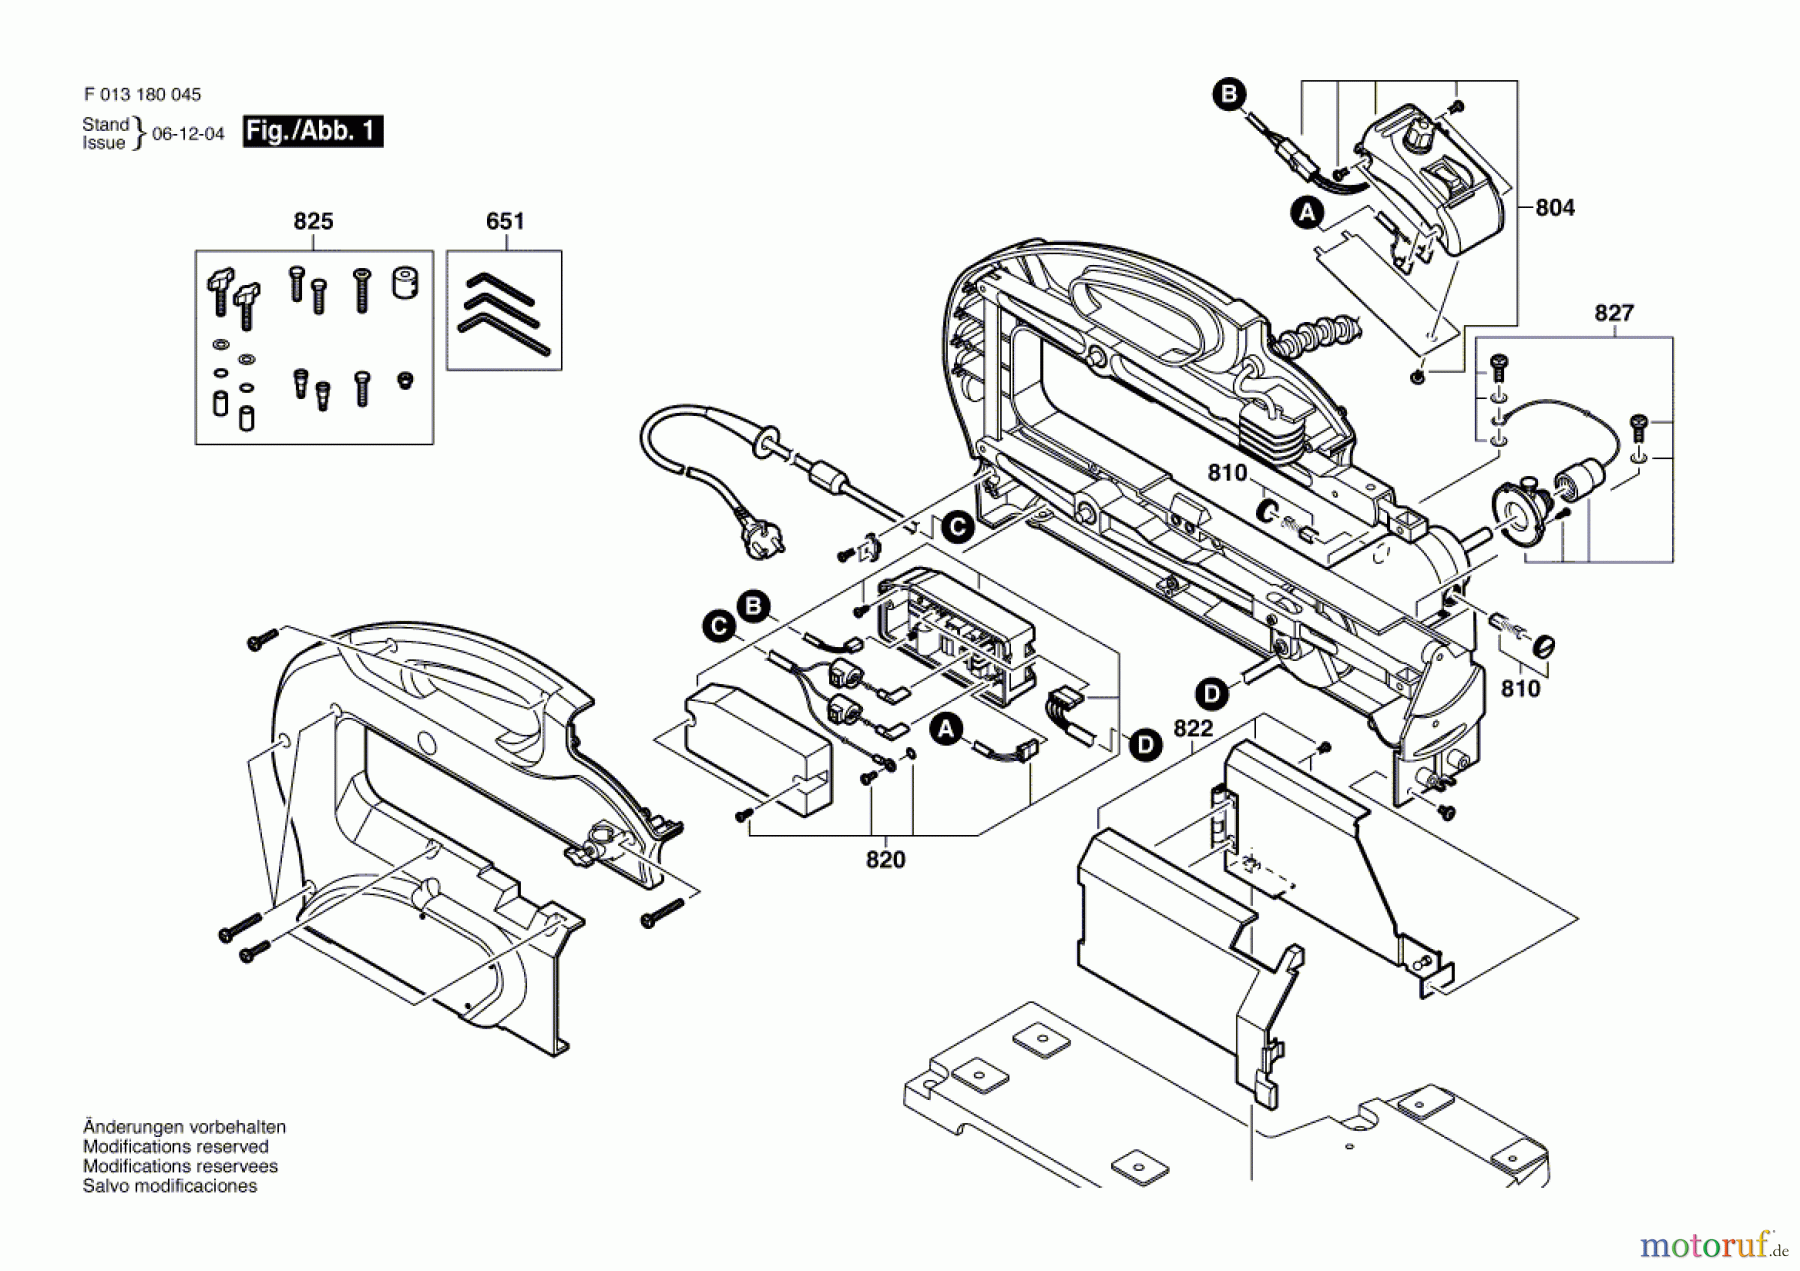  Bosch Werkzeug Bügelsäge 1800 Seite 1